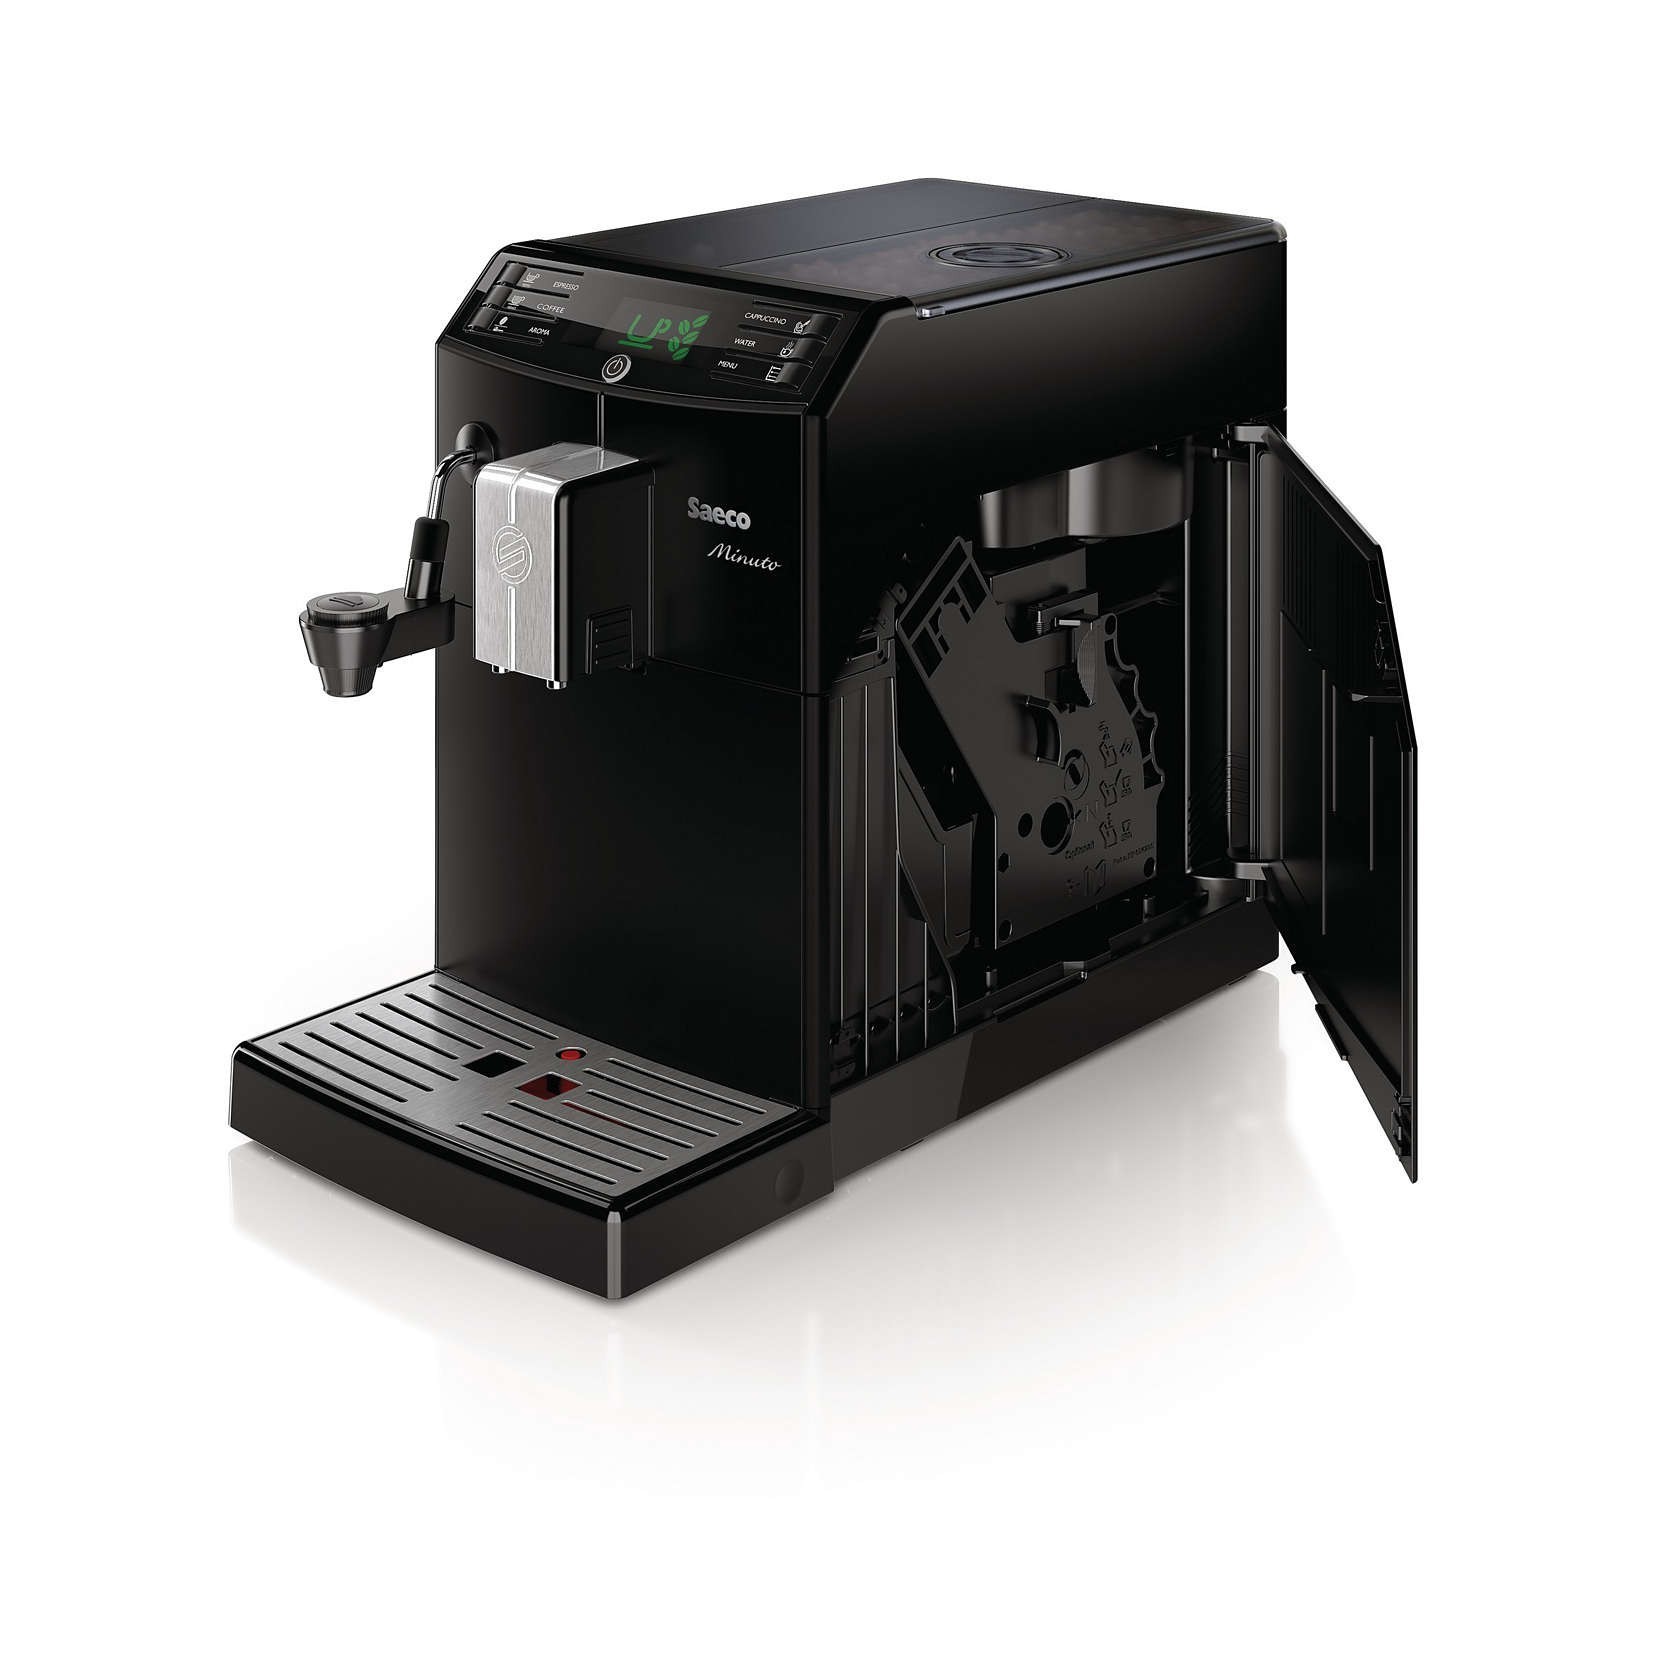 Кофеварка Philips Saeco Minuto Automatic HD 8762